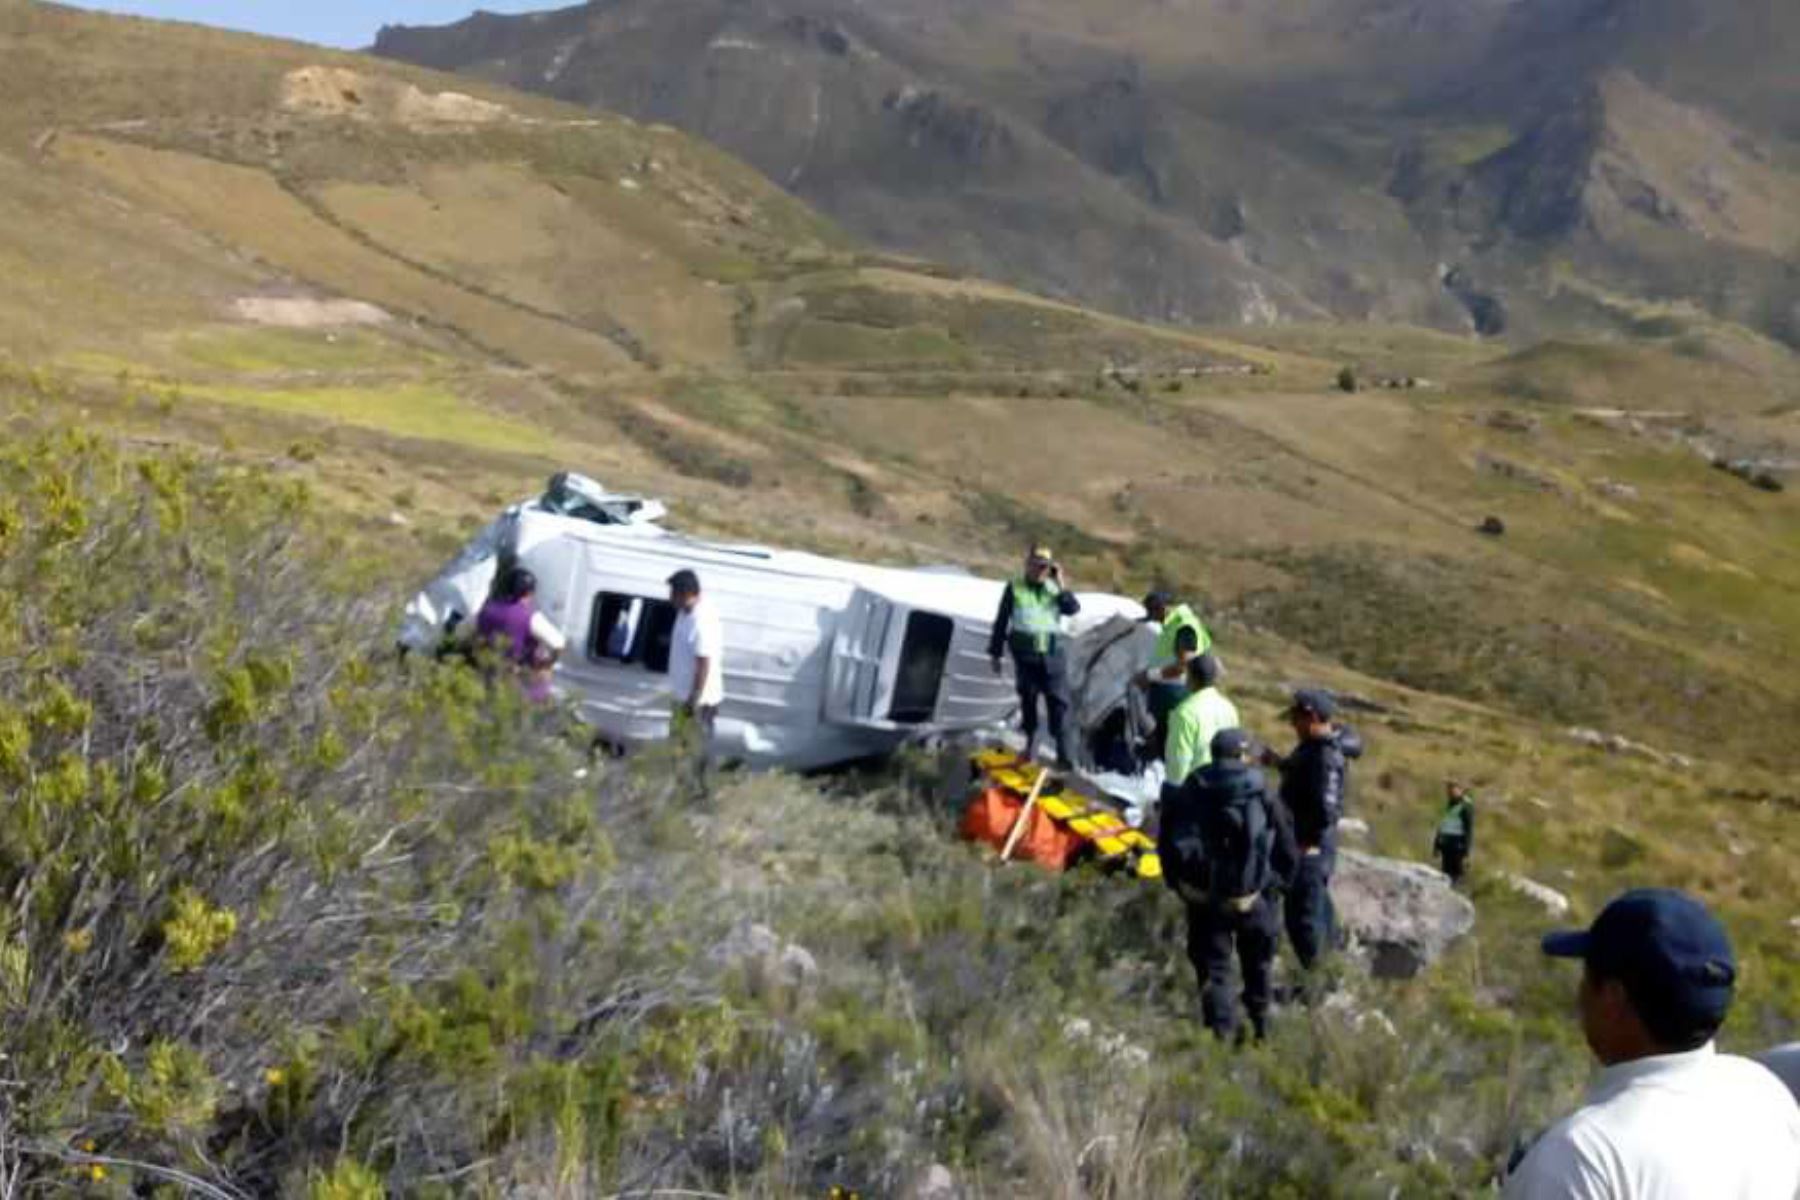 Dos turistas de nacionalidad alemana perdieron hoy la vida luego que se despistara la minivan en la que se trasladaban hacia el valle del Colca. El accidente ocurrió en el sector de Palacchilla, a cinco minutos de la ciudad de Chivay, capital de la provincia de Caylloma, en Arequipa.